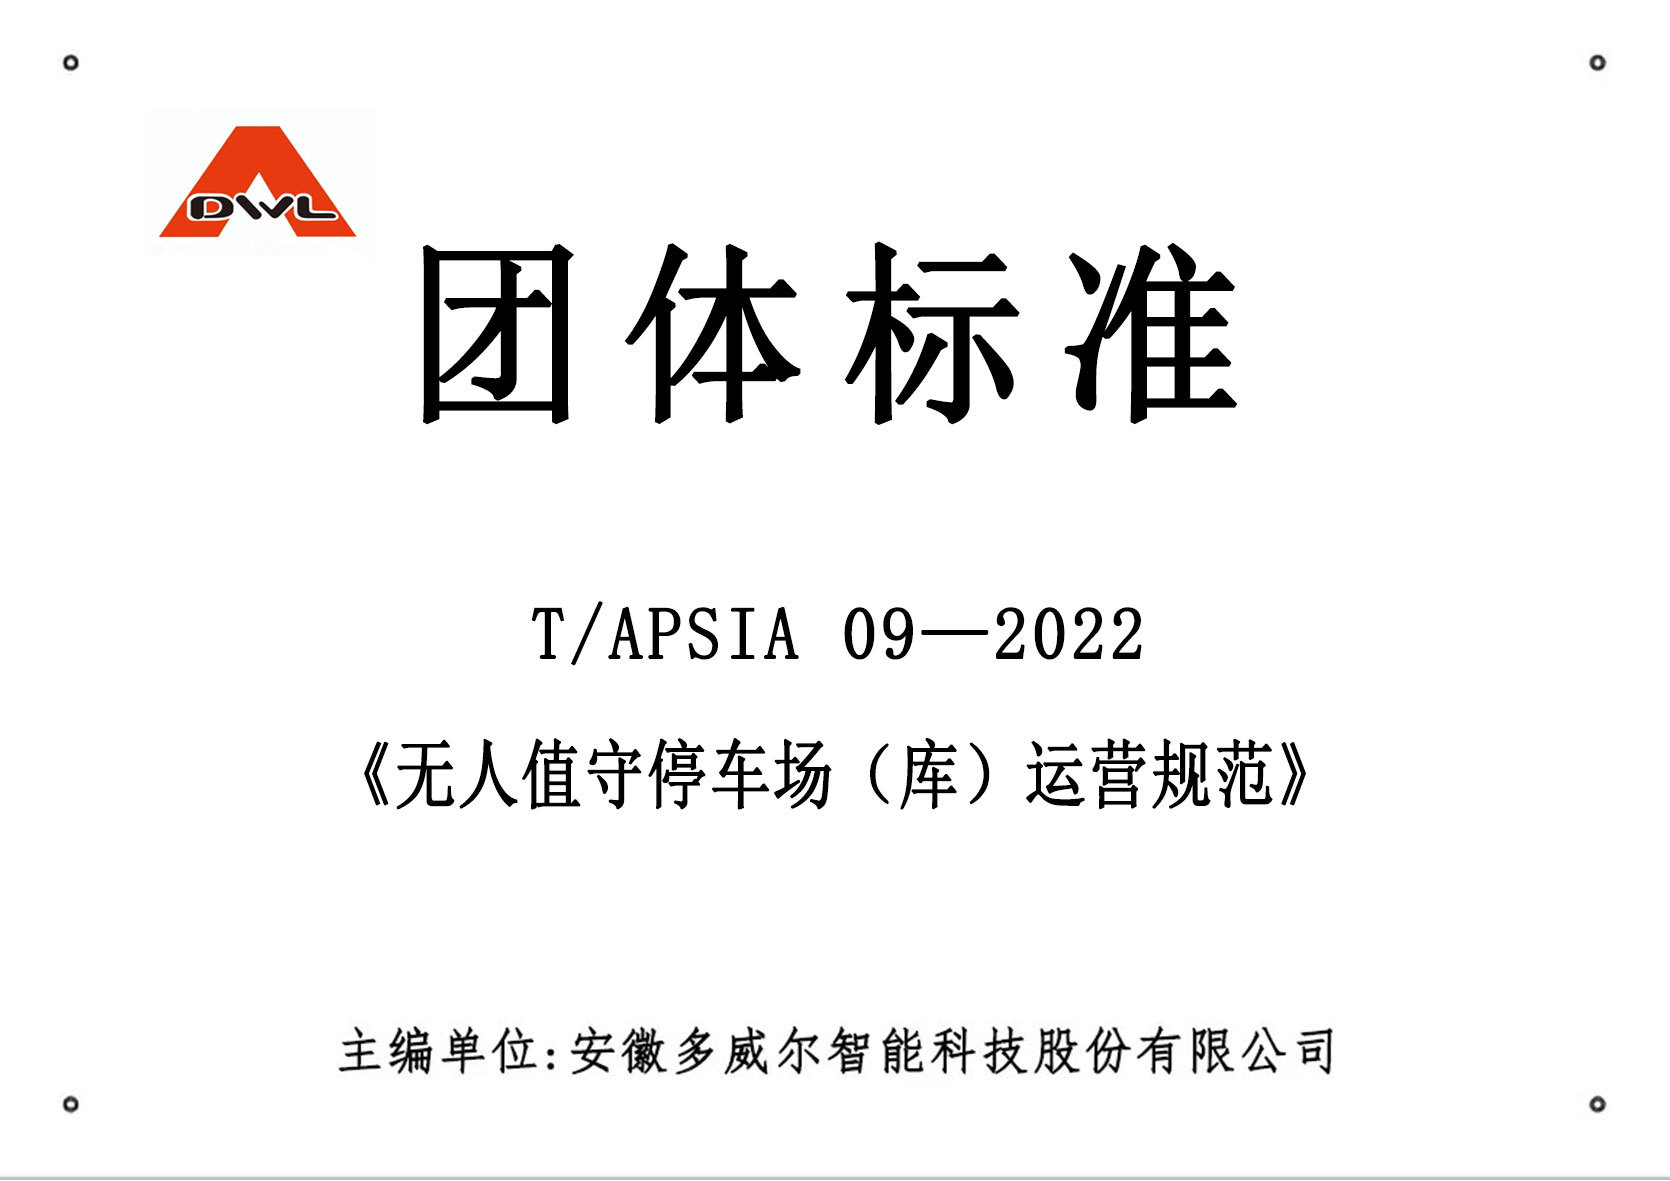 T/APSIA 09—2022《無人值守停車場（庫）運營規范》團體標準正式發布實施